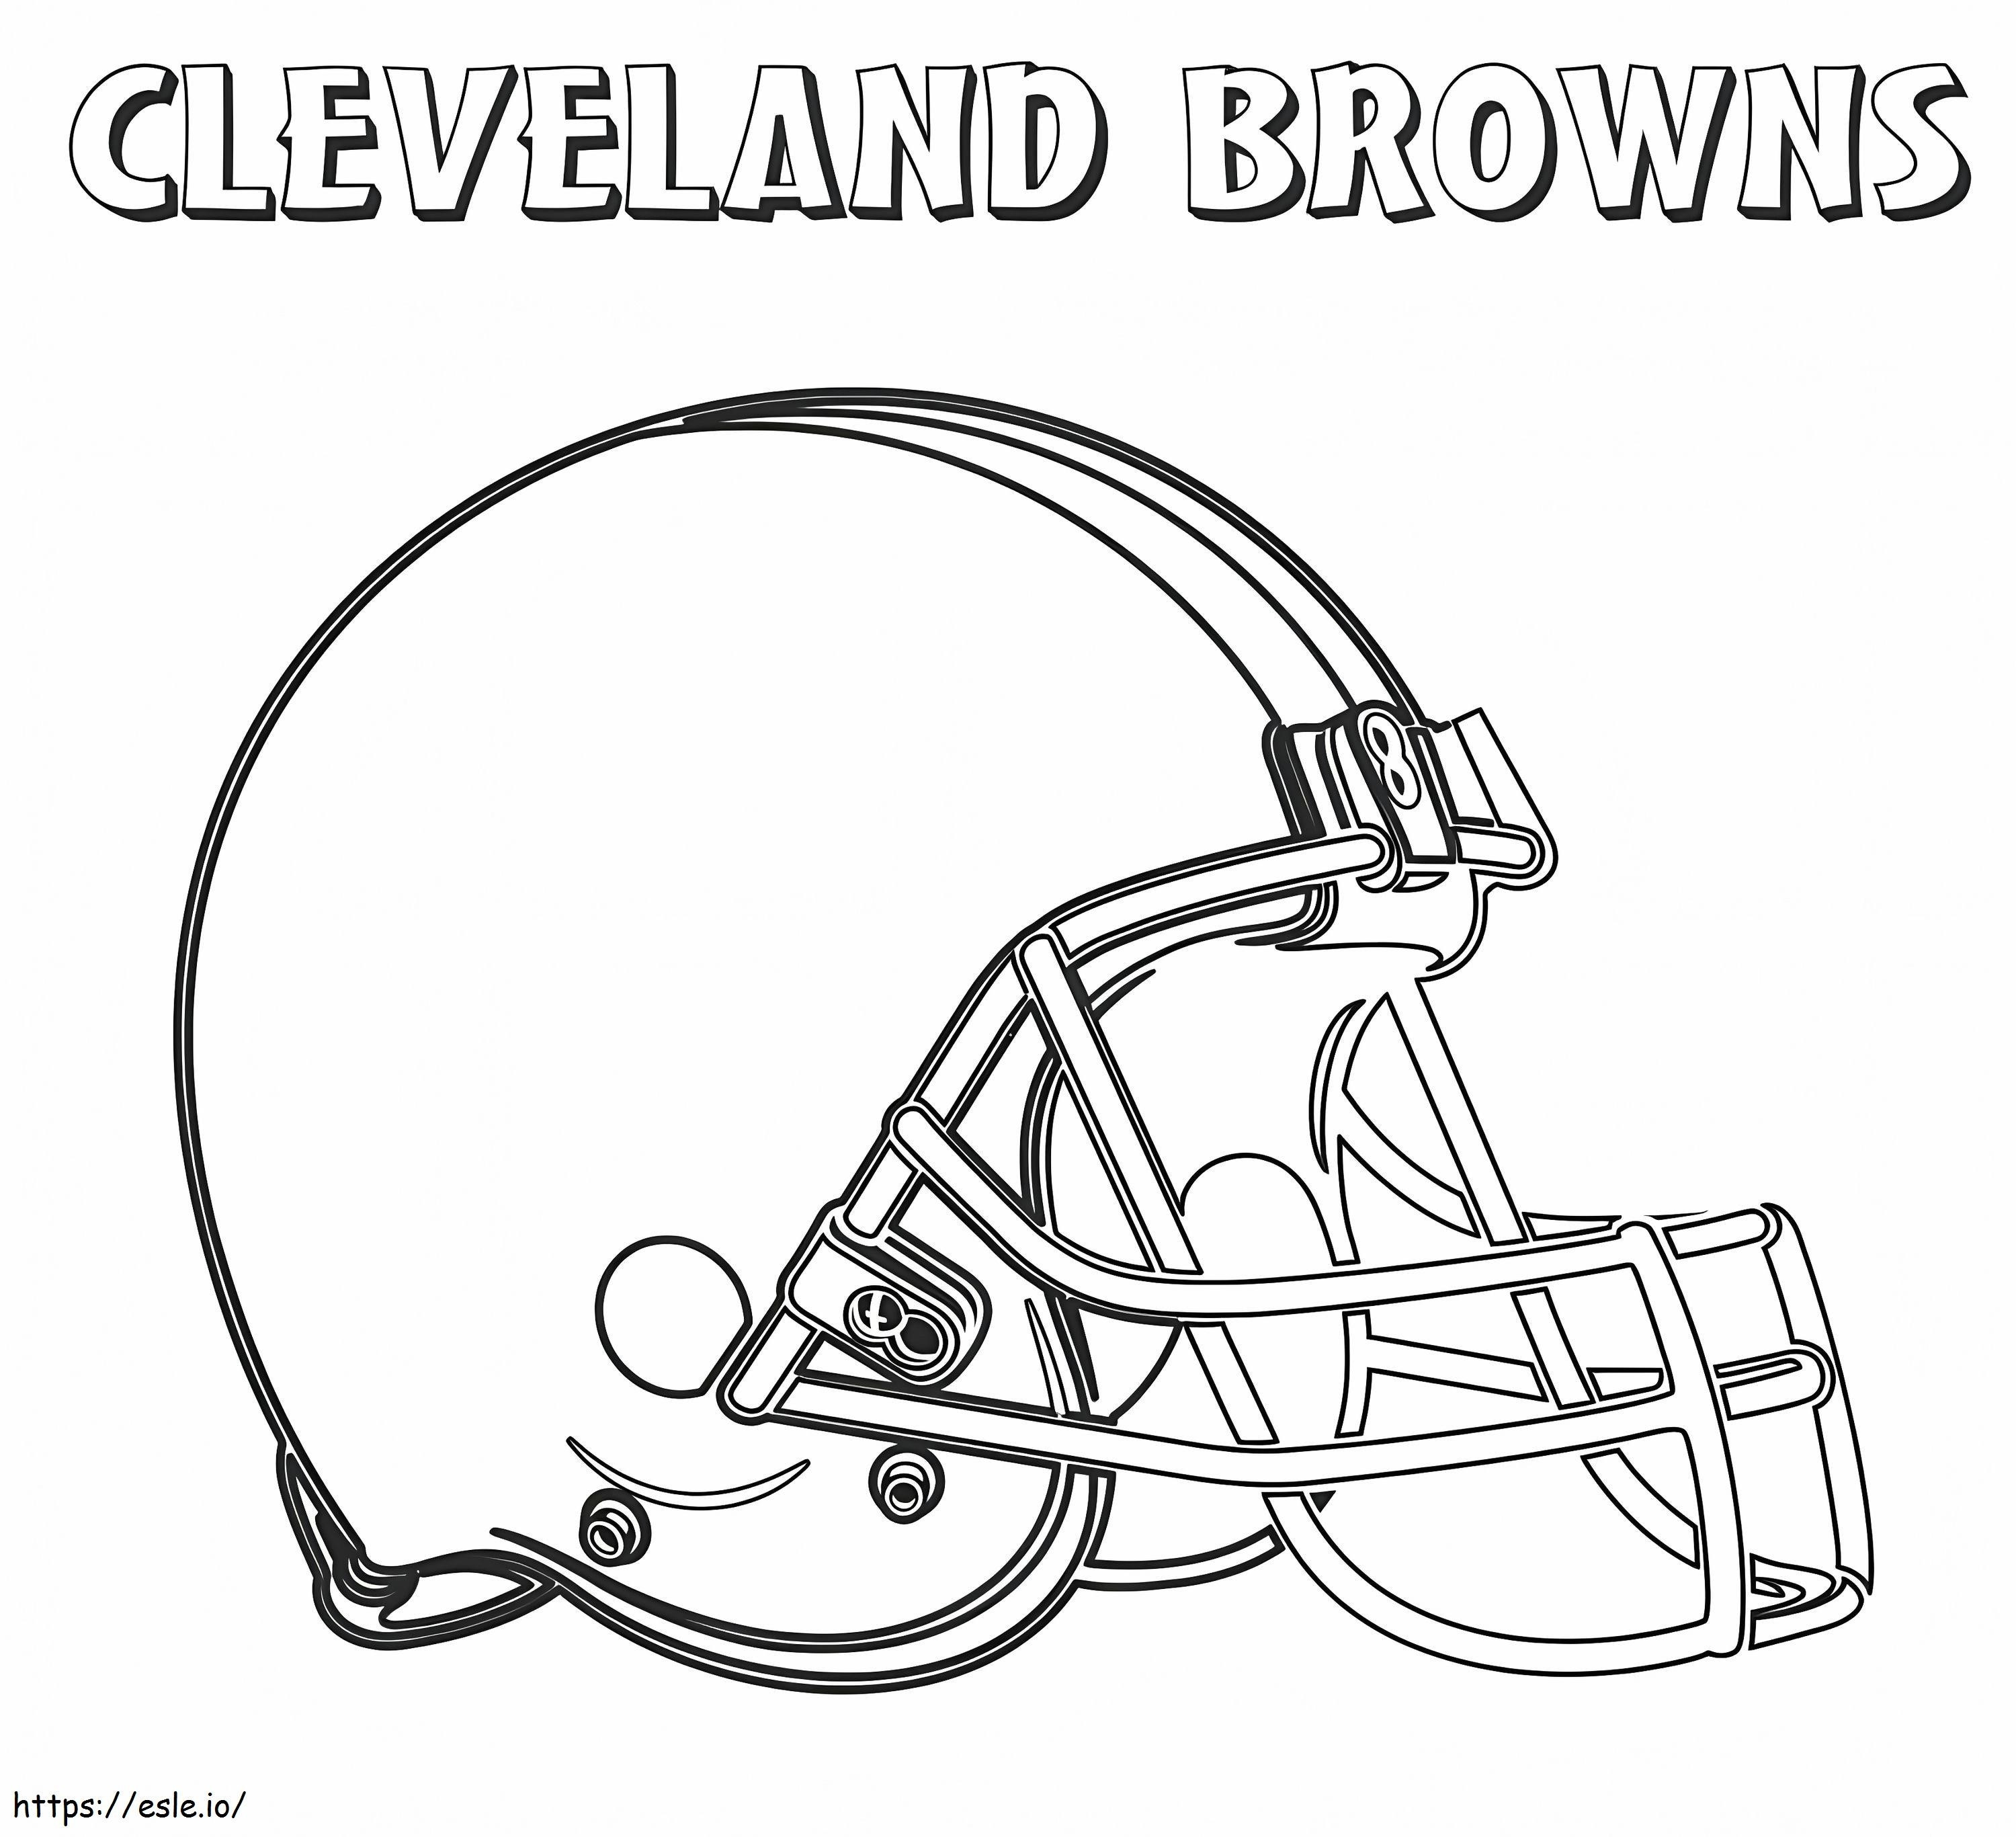 Cleveland Browns 1 de colorat